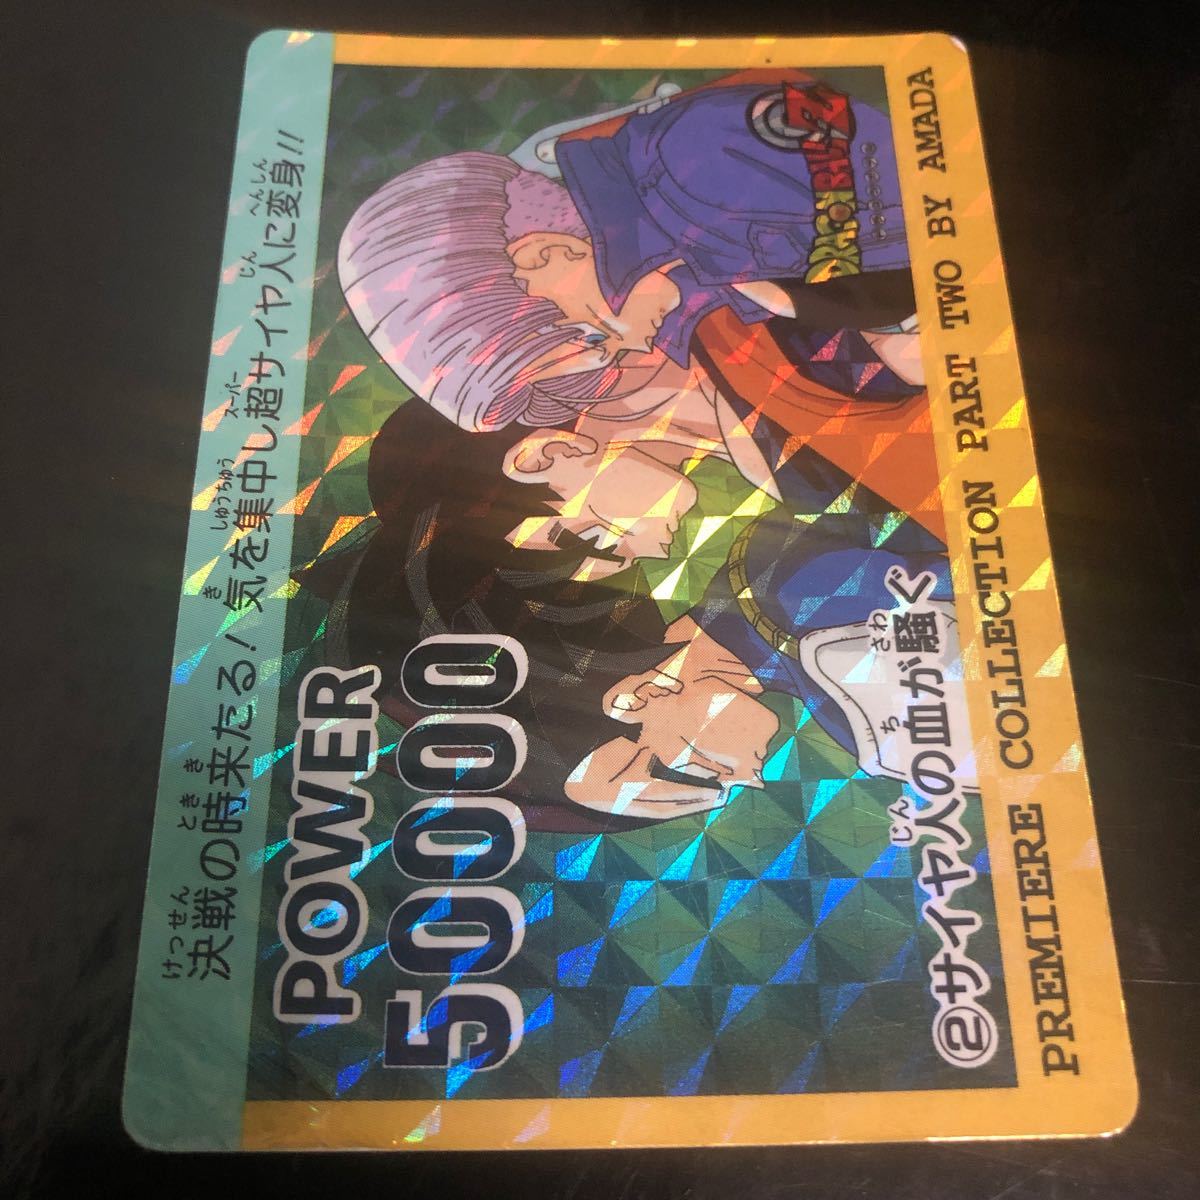  Dragon Ball Carddas PP card Amada premium collection No.2